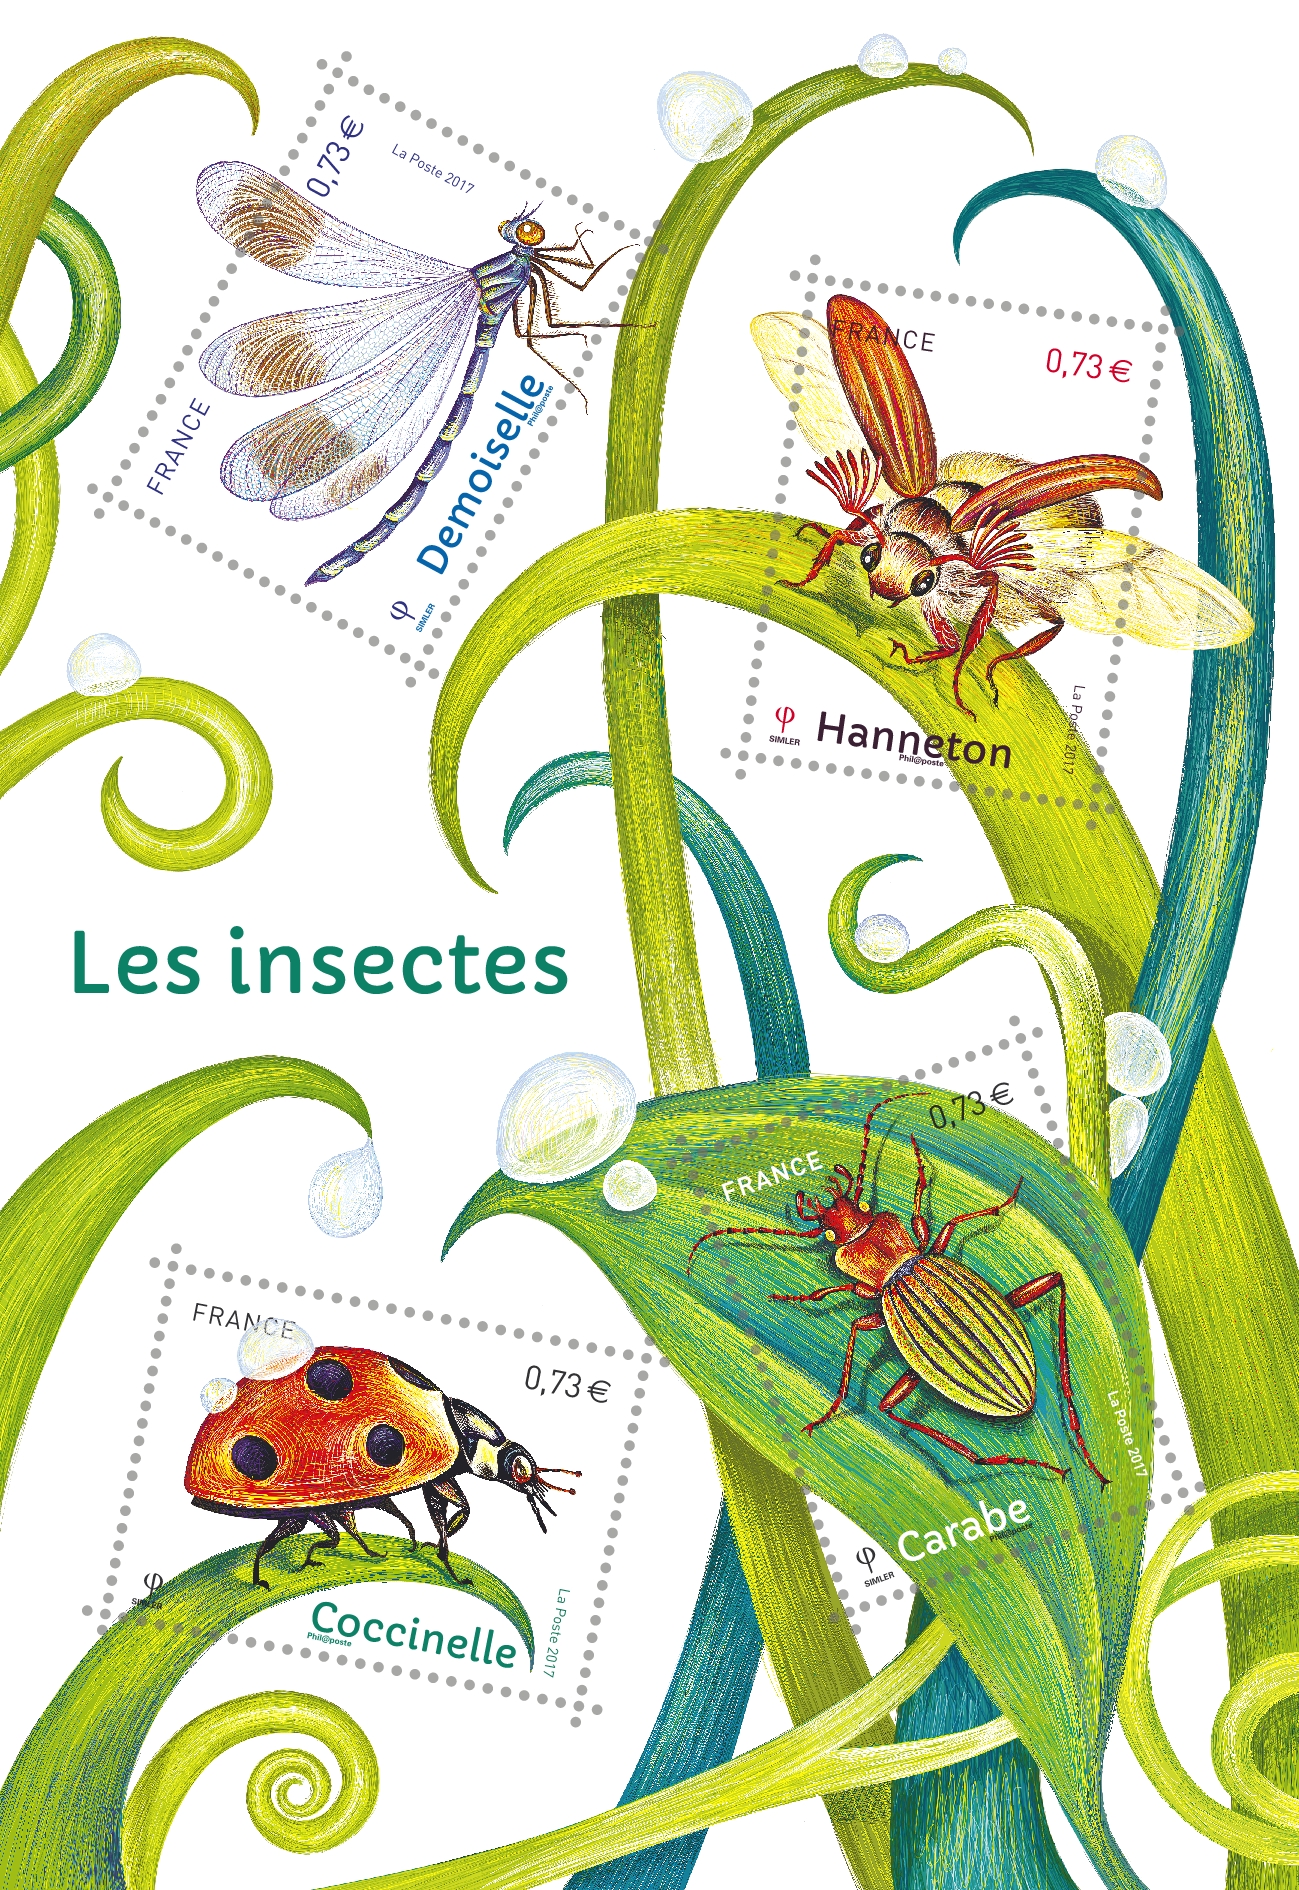 Les insectes - Demoiselle, Hanneton, Carabe, Coccinelle